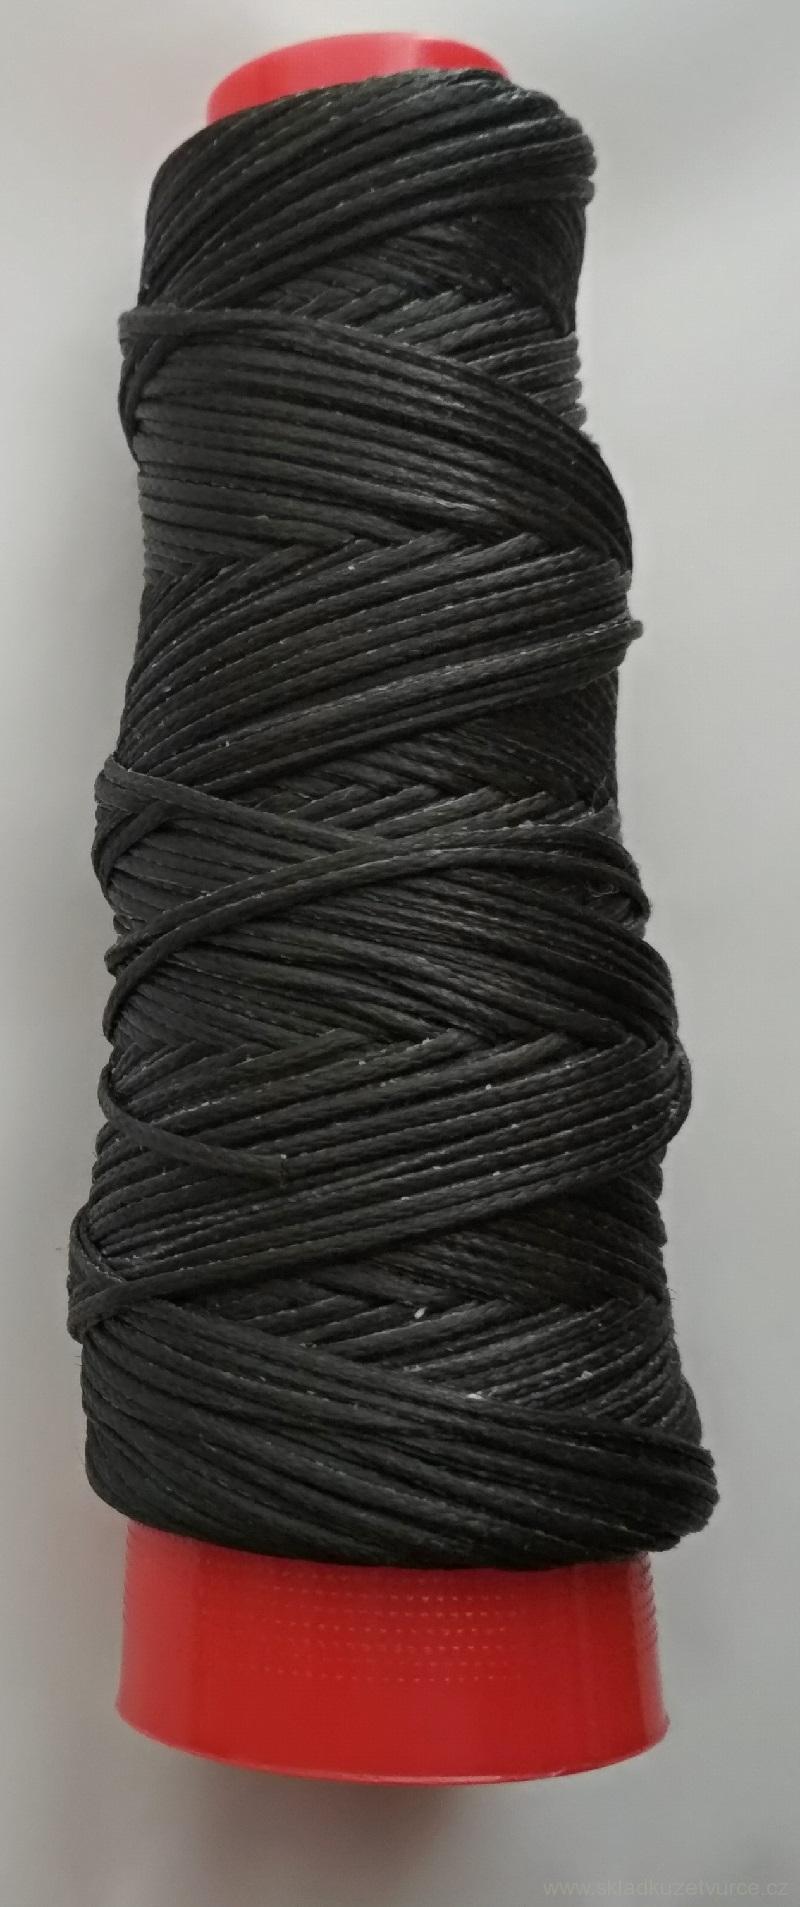 Polyesterová nit EUROJET SLAM  černá vosk. 1,2 mm